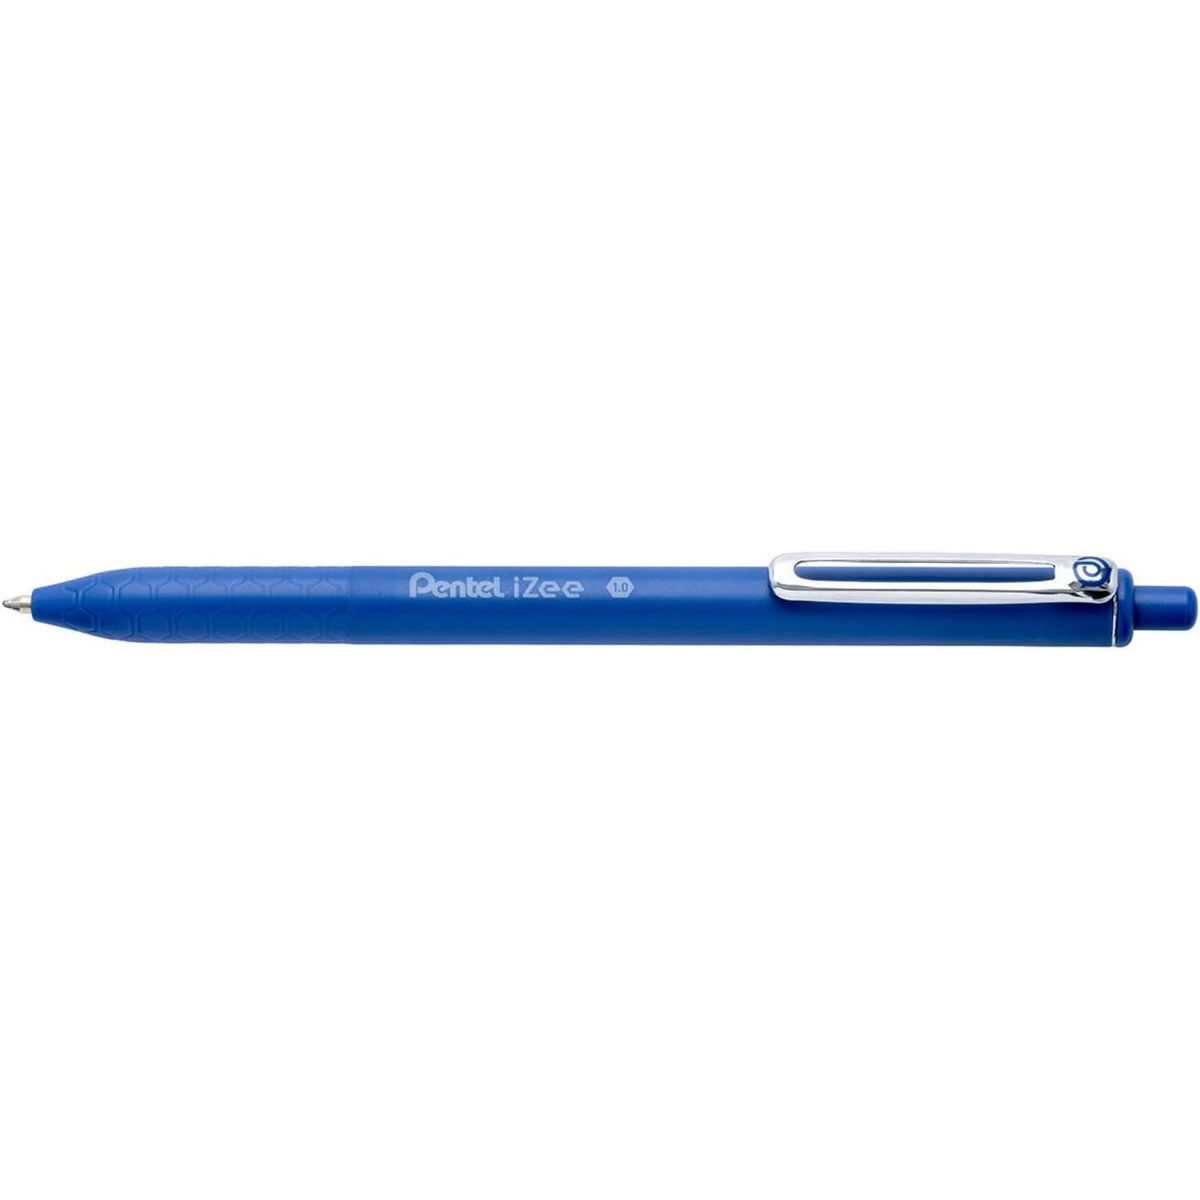 بنتل أيزي قلم حبر جاف قابل للسحب 0.7 ملم مع مشبك معدني وسن عريض باللون الأزرق، 8sBX470